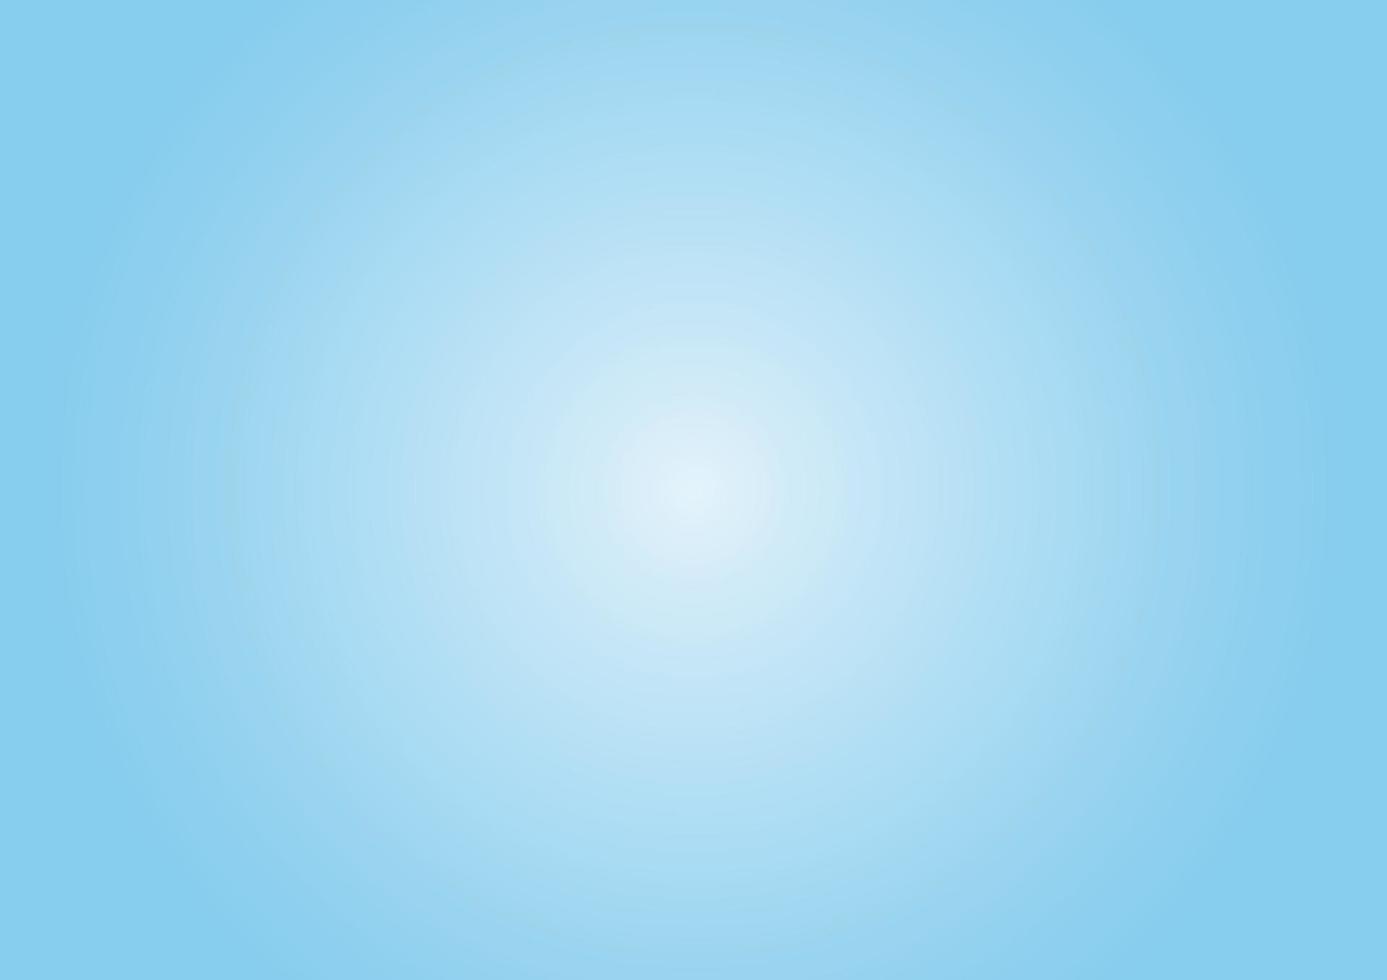 himmelblauer Hintergrund mit Farbverlauf. weiche, einfarbige, hellblaue und weiße radial glatte Tapete. Vektor-Illustration-Design. Folge 10. vektor